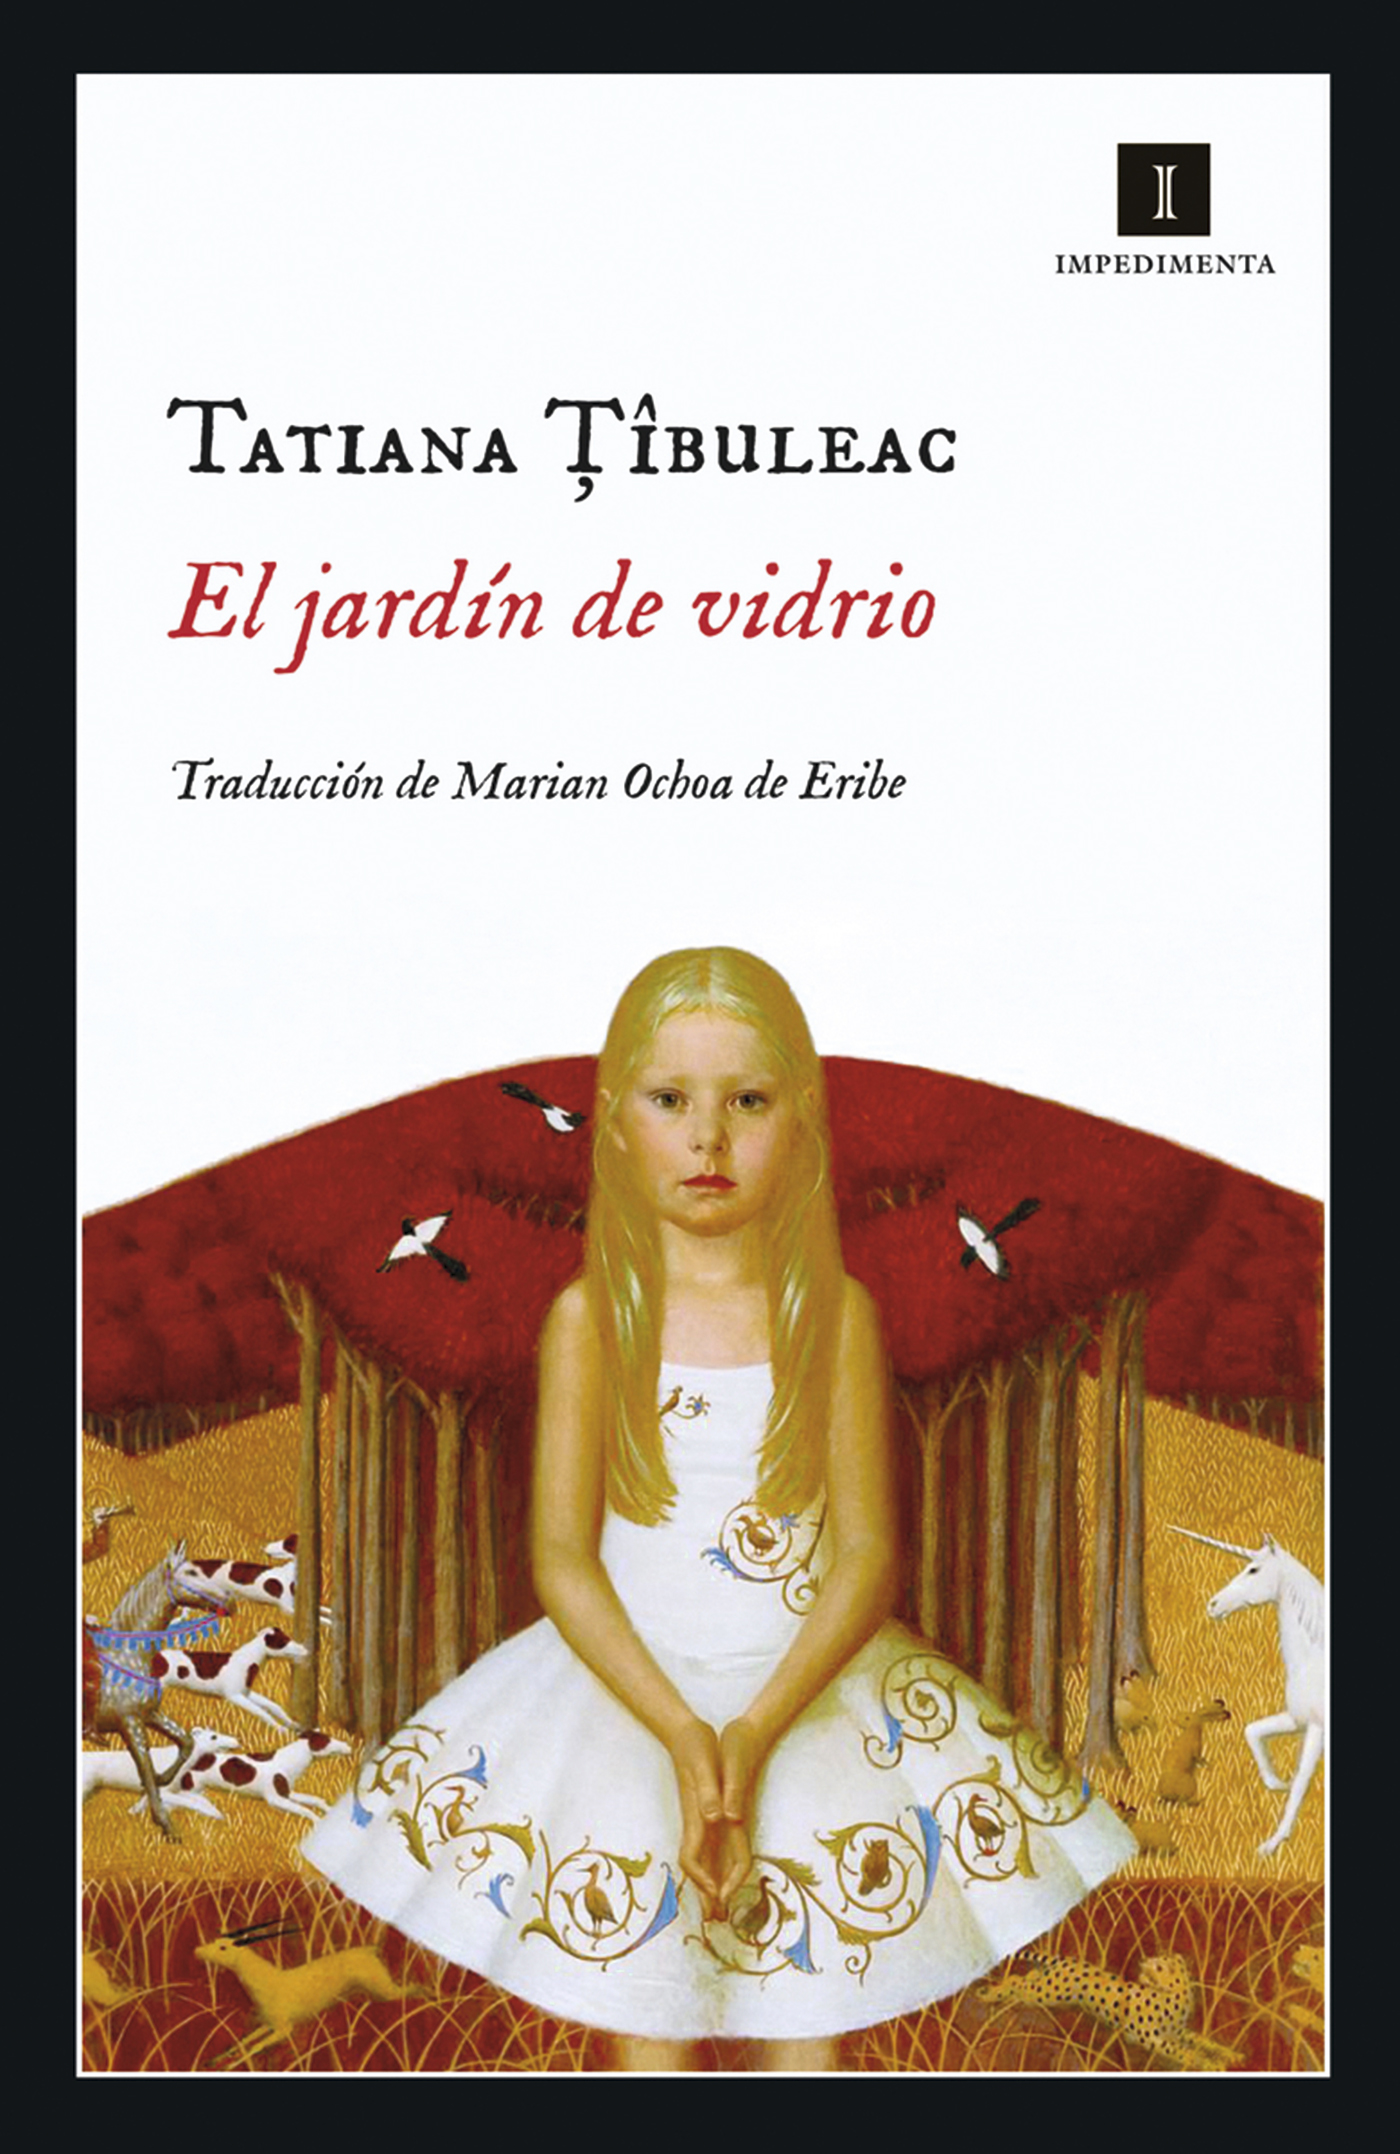 Tatiana Tibuleac